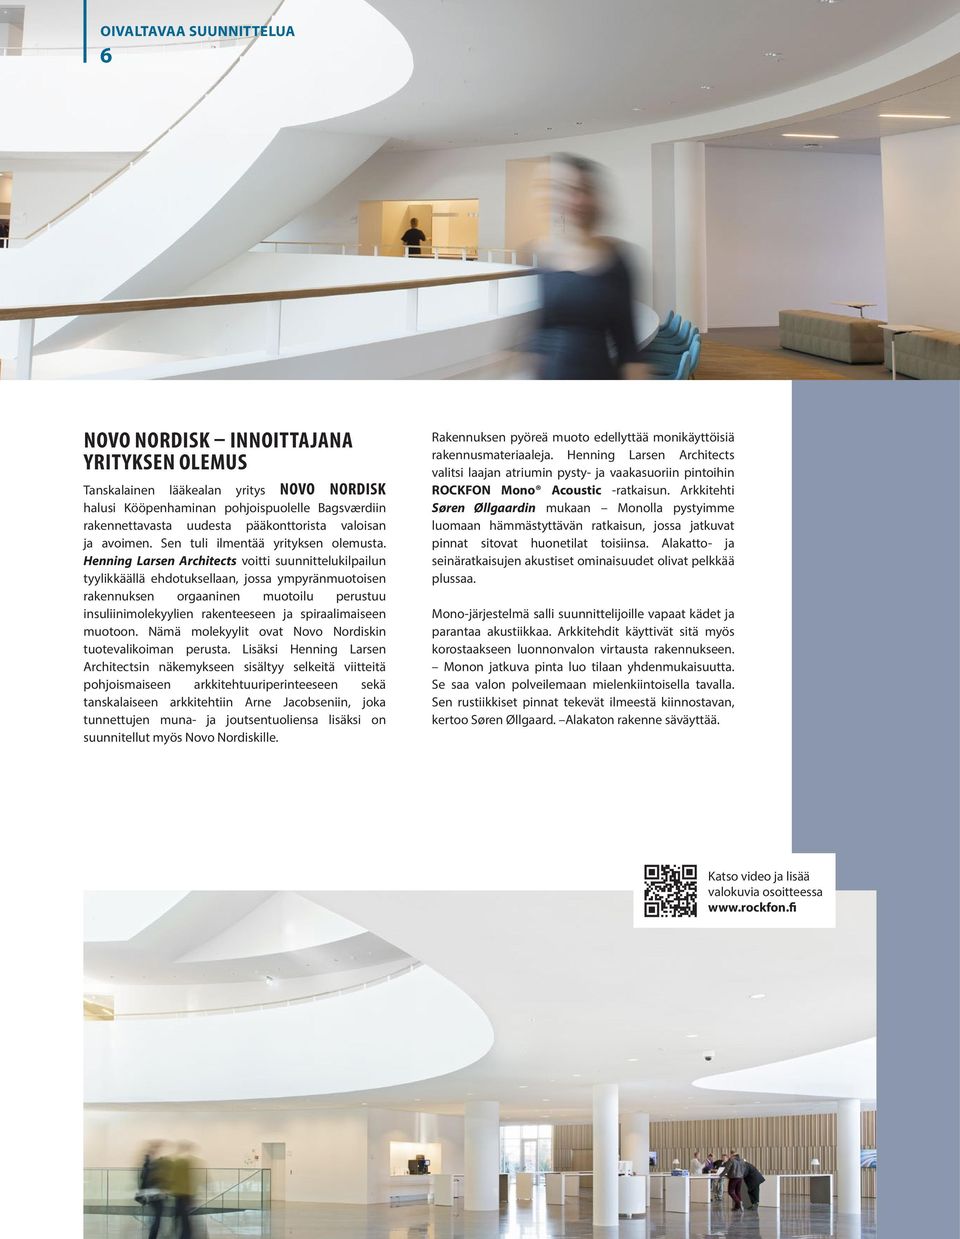 Henning Larsen Architects voitti suunnittelukilpailun tyylikkäällä ehdotuksellaan, jossa ympyränmuotoisen rakennuksen orgaaninen muotoilu perustuu insuliinimolekyylien rakenteeseen ja spiraalimaiseen